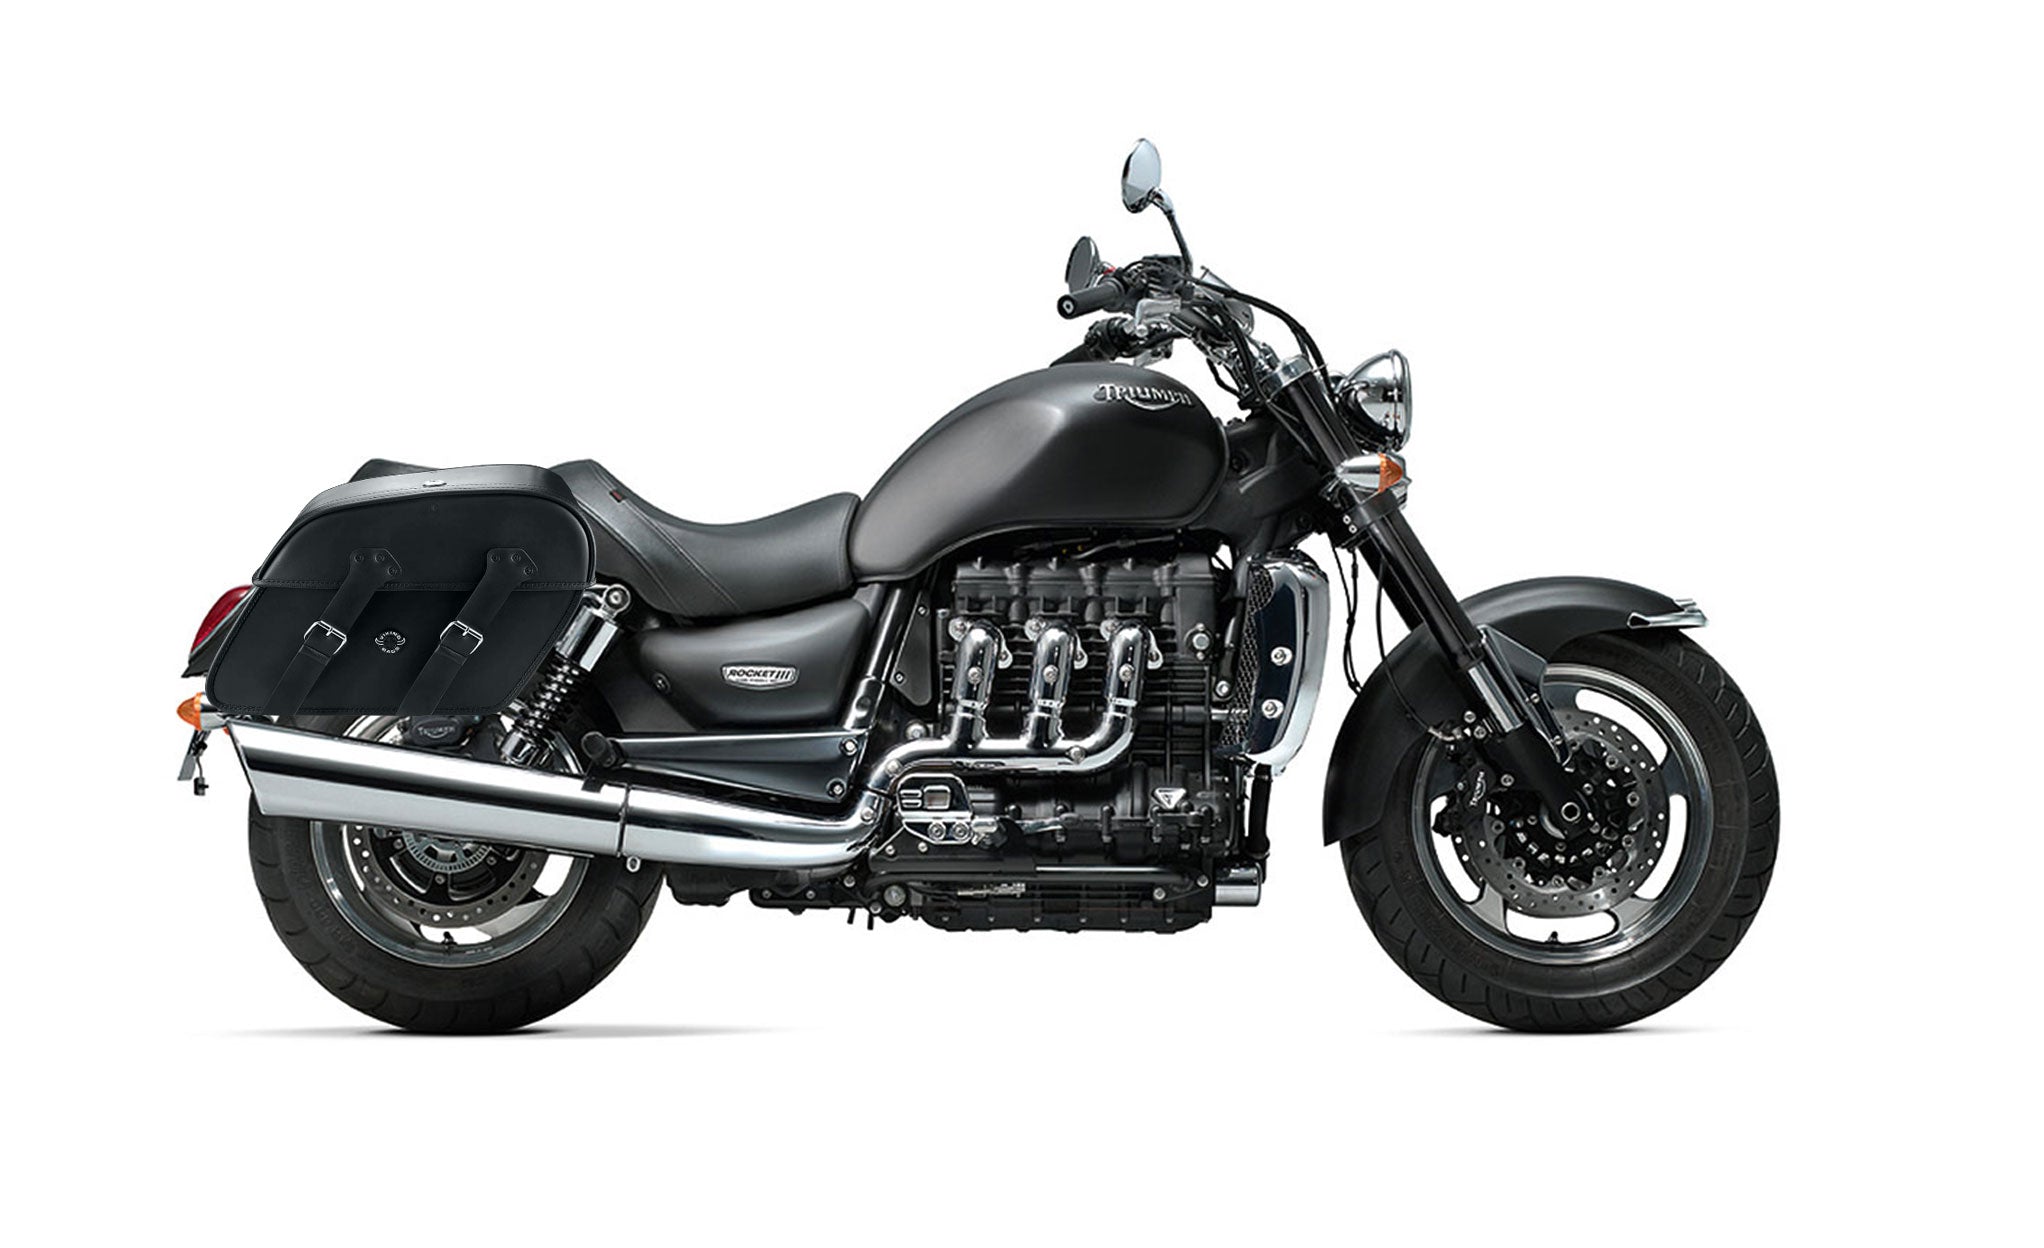 Viking Raven Extra Large Triumph Rocket Iii Classic Leather Motorcycle Saddlebags on Bike Photo @expand